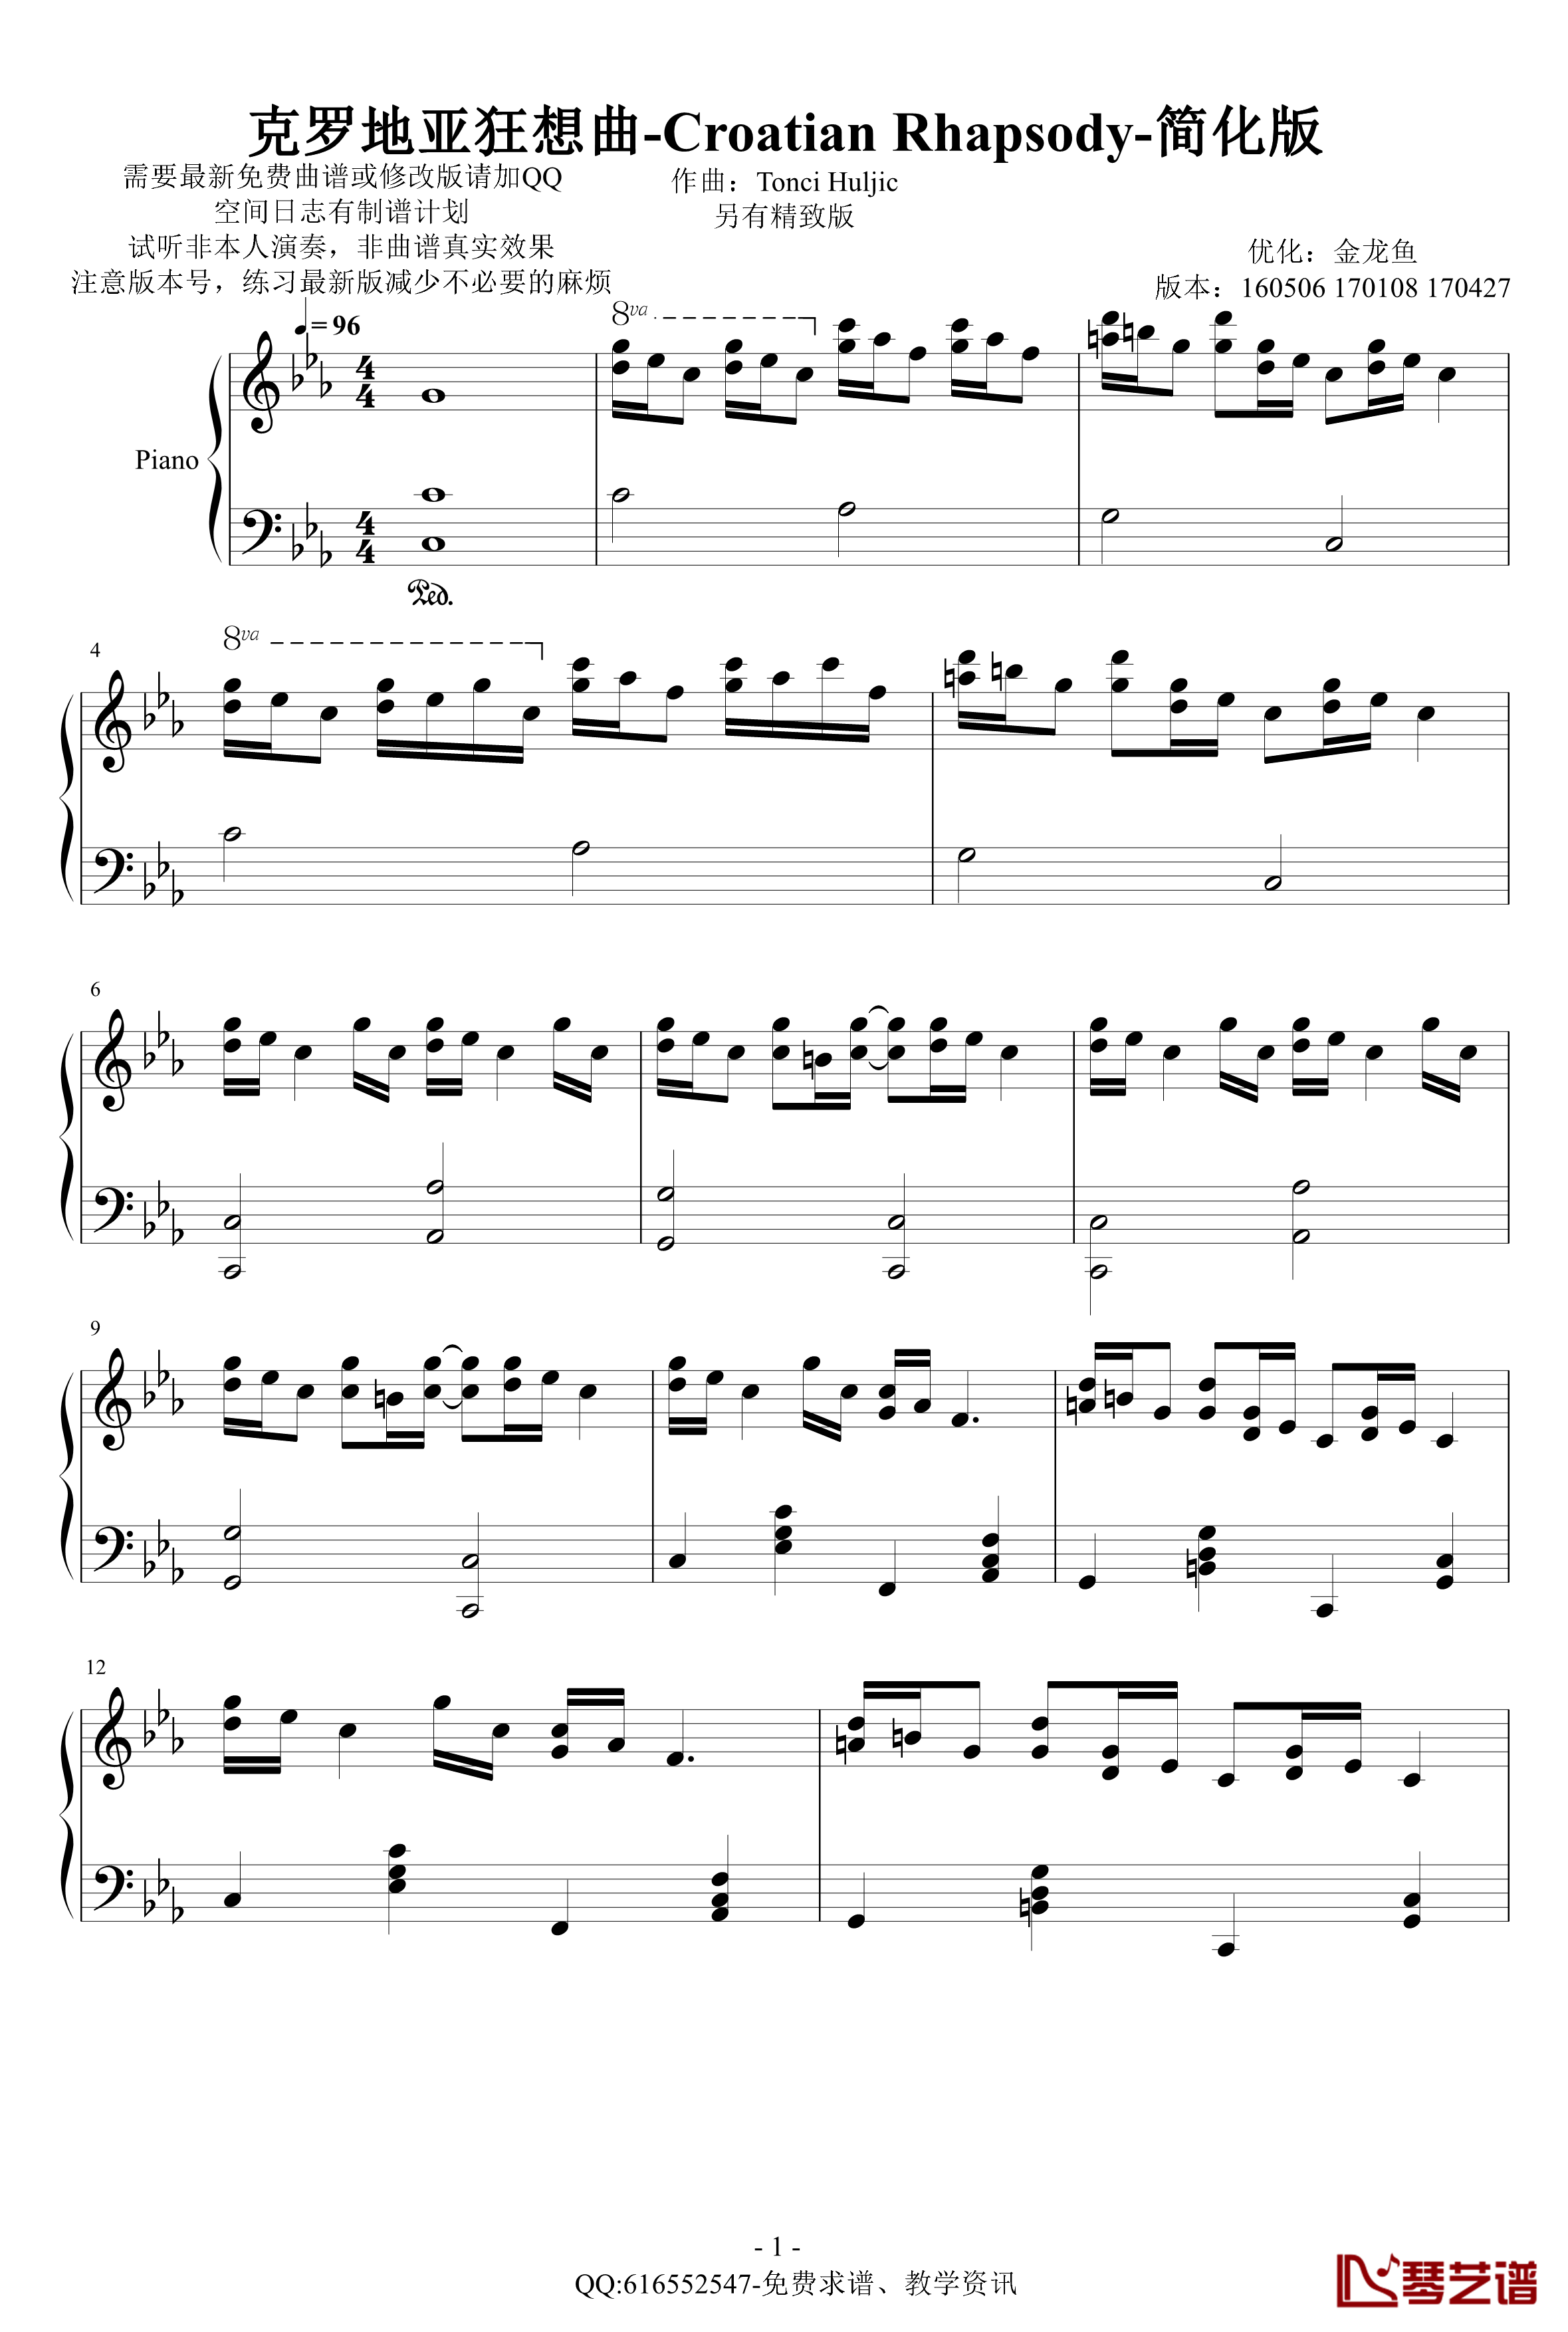 克罗地亚狂想曲钢琴谱-简化版-金龙鱼170427-马克西姆-Maksim·Mrvica1